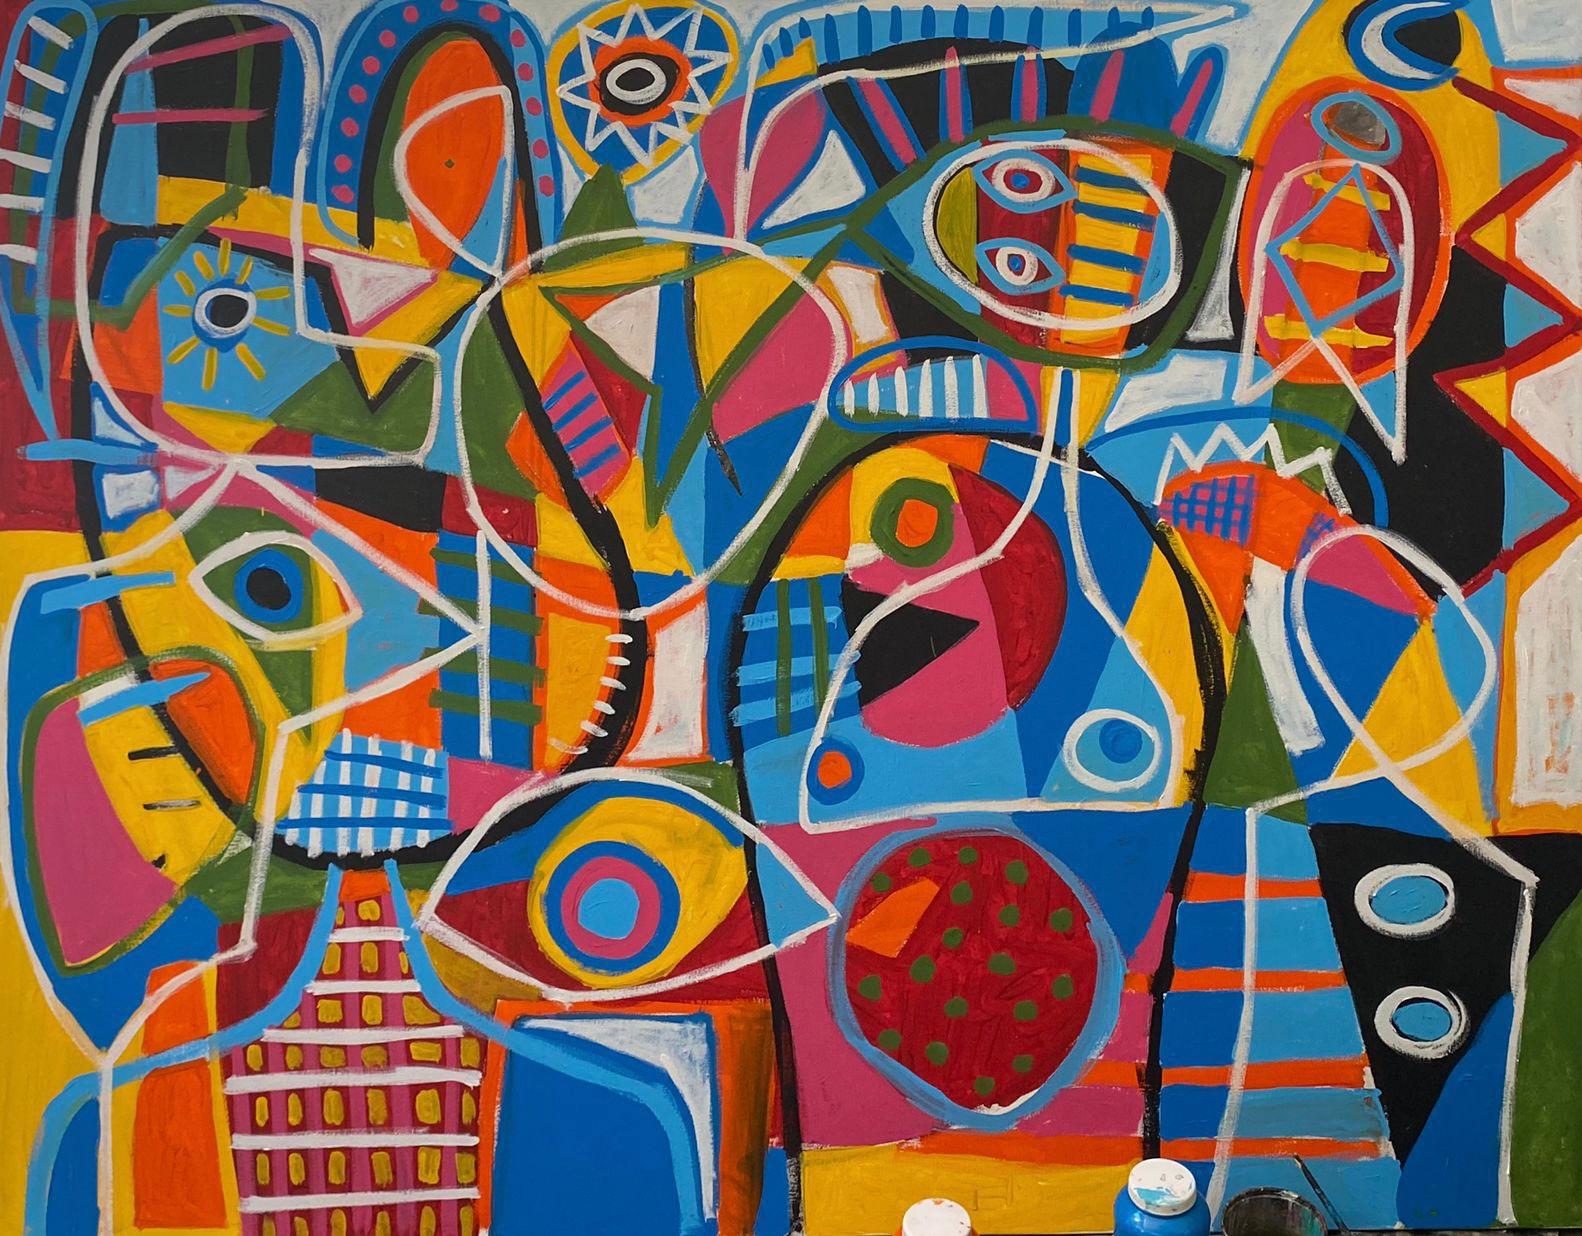 Abstract Painting Enrique Pichardo - Improvisacion, Art contemporain, Peinture abstraite, 21ème siècle